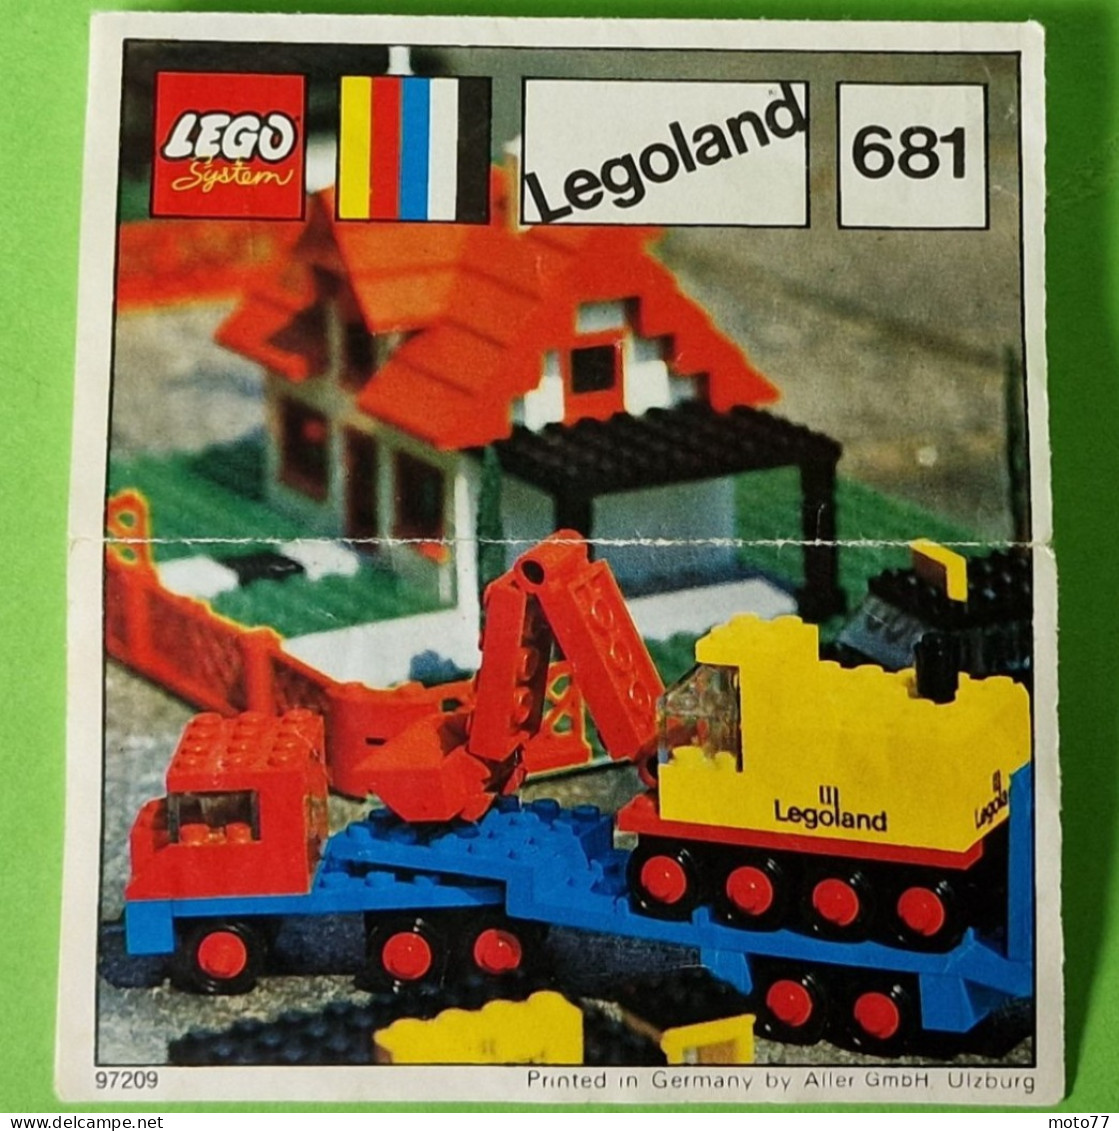 Lot ancien jeux de Construction LEGO 681 - CAMION PLATEAU-REMORQUE et PELLETEUSE - Document de montage - vers 1970